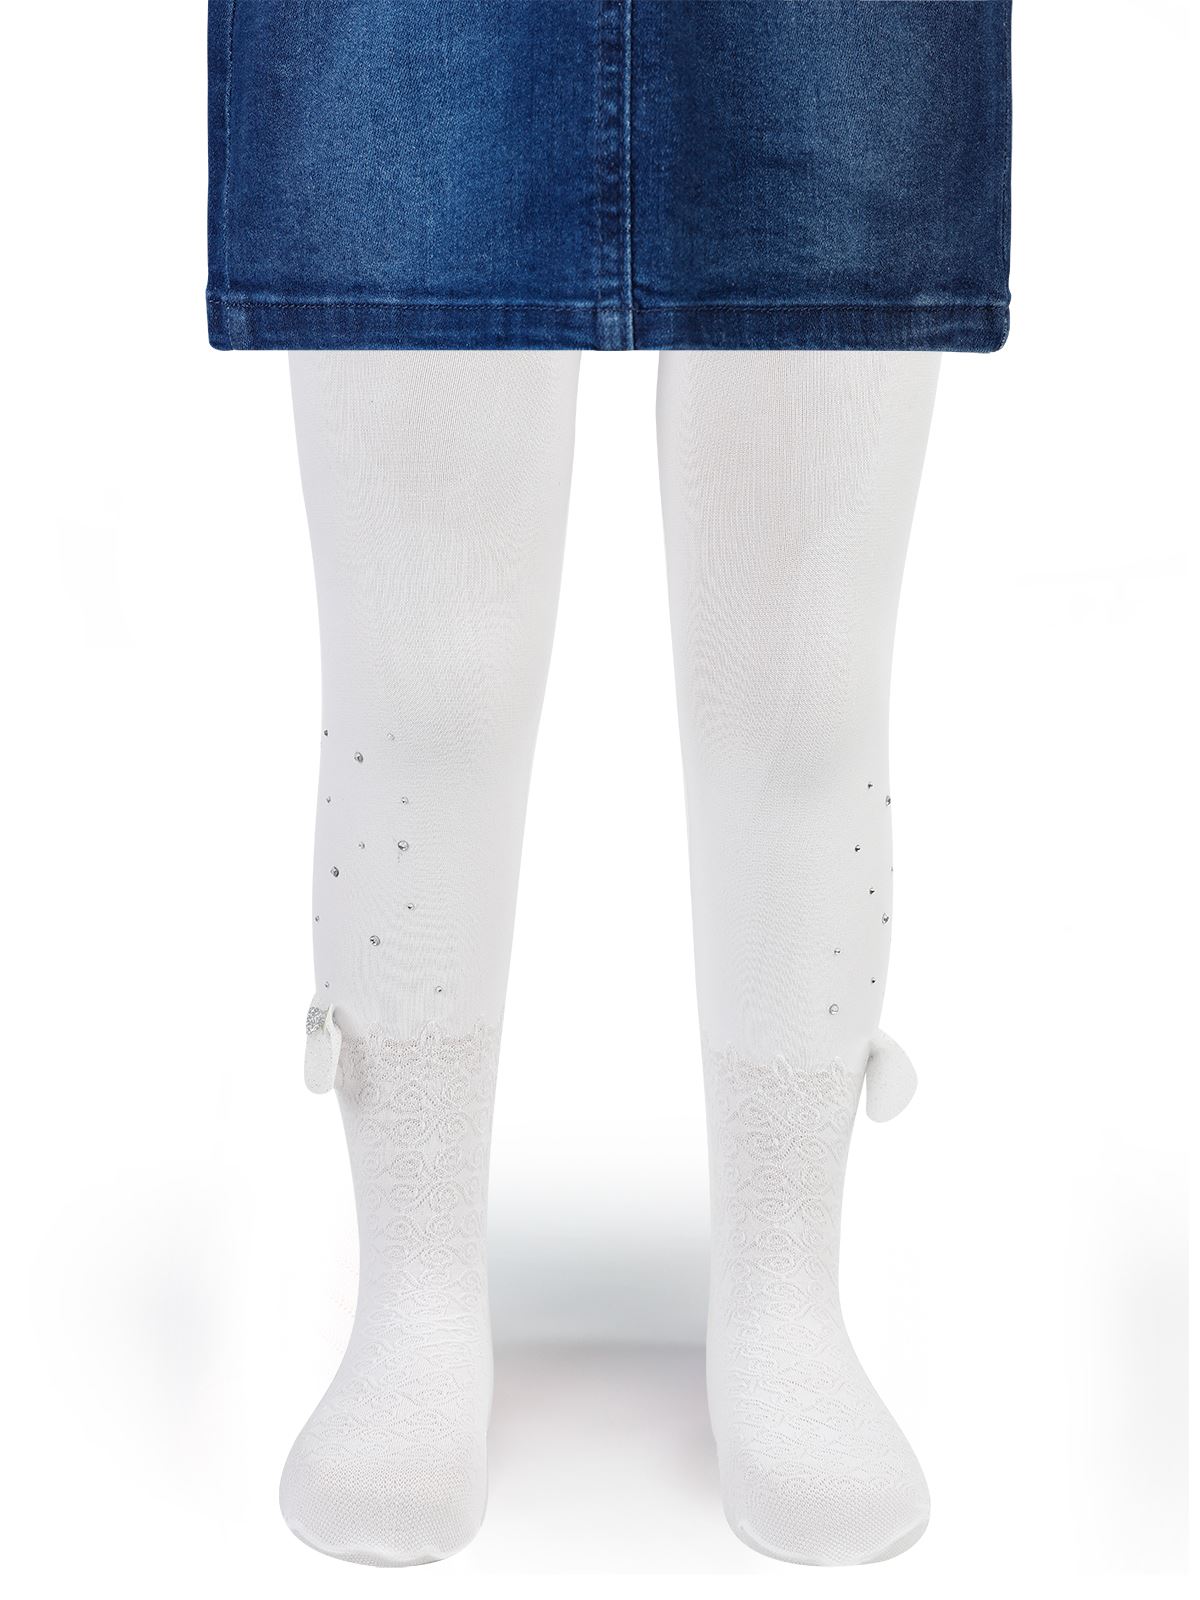 Artı Kız Çocuk Külotlu Çorap 1-7 Yaş Beyaz